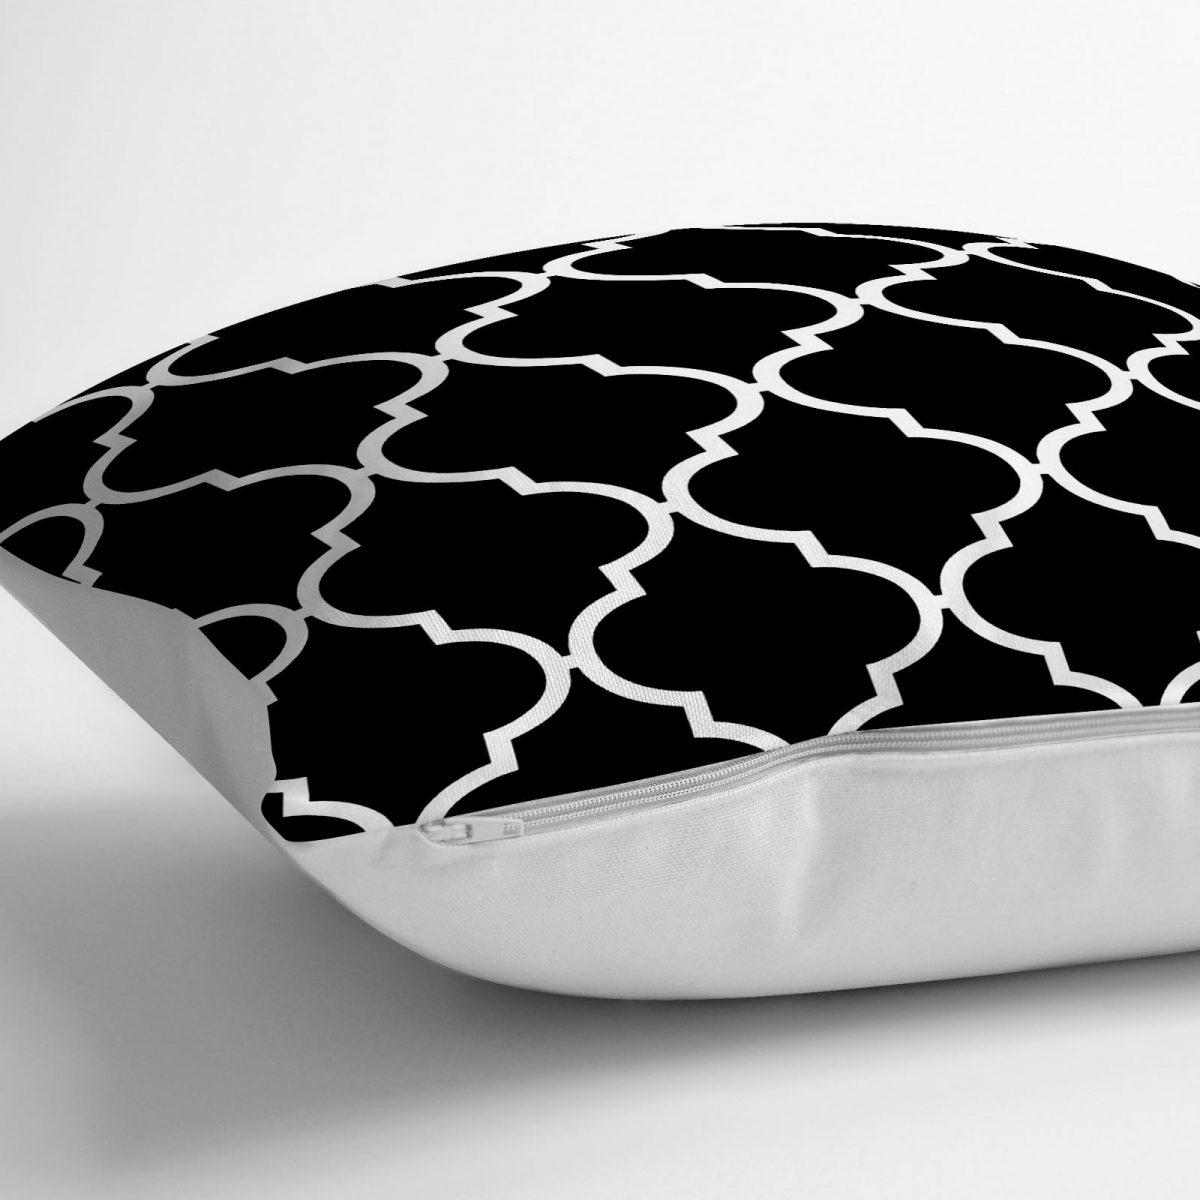 Siyah Beyaz Ogea Tasarımlı Dijital Baskılı Dekoratif Yer Minderi - 70 x 70 cm Realhomes